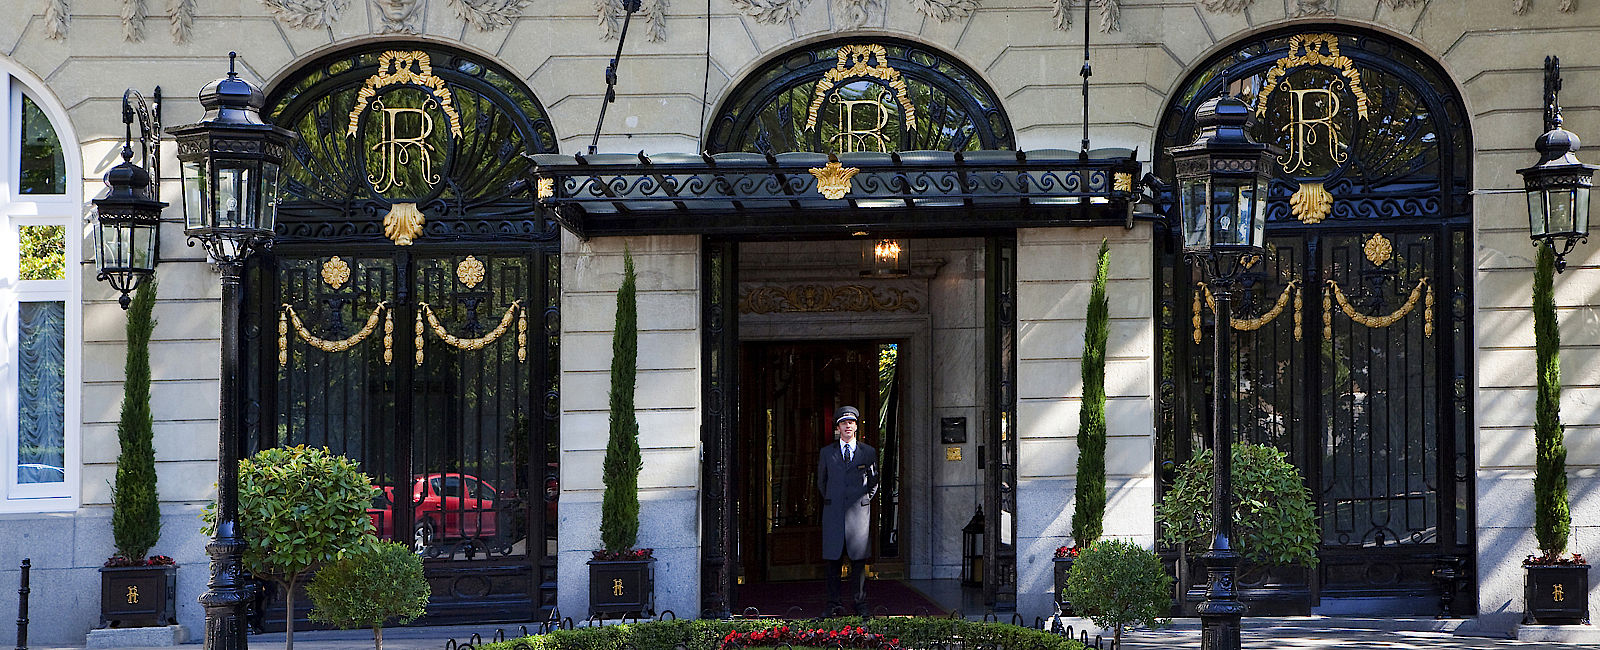 HOTEL TIPPS
 Hotel Ritz, Madrid 
 Pompöses Exklusiv Hotel aus dem Jahr 1910 